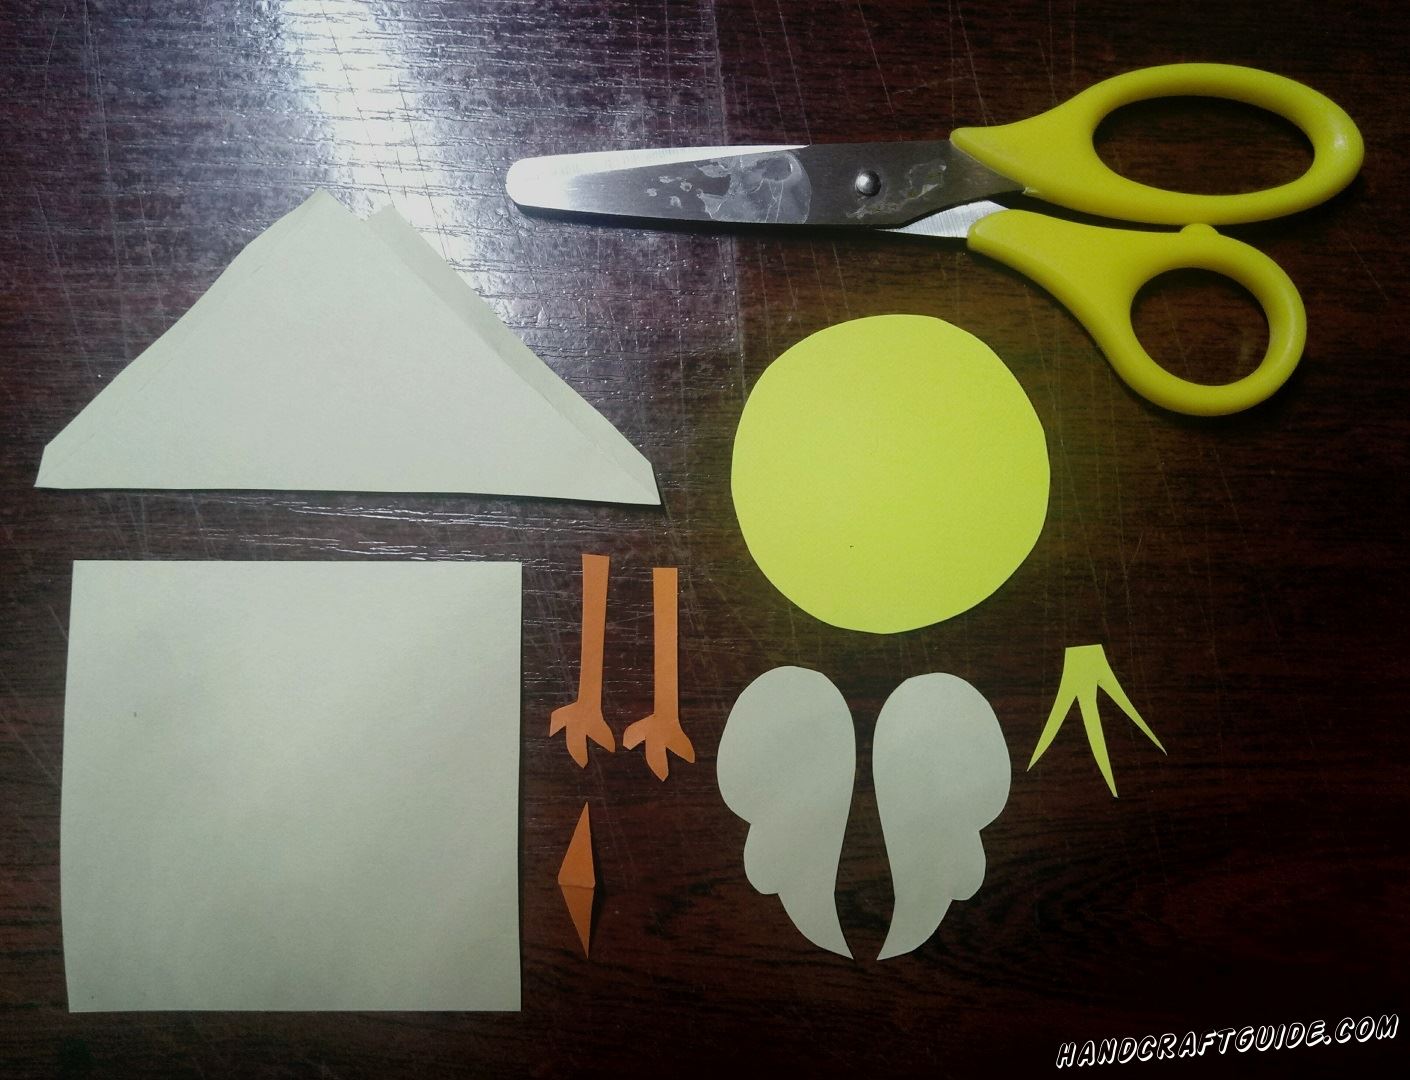 Из белой бумаги мы вырезаем треугольник, квадрат, два маленьких кружка и два крылышка. Теперь берём желтую бумагу и ножницами вырезаем круг и причёску. Осталось только вырезать клювик и две лапки оранжевого цвета